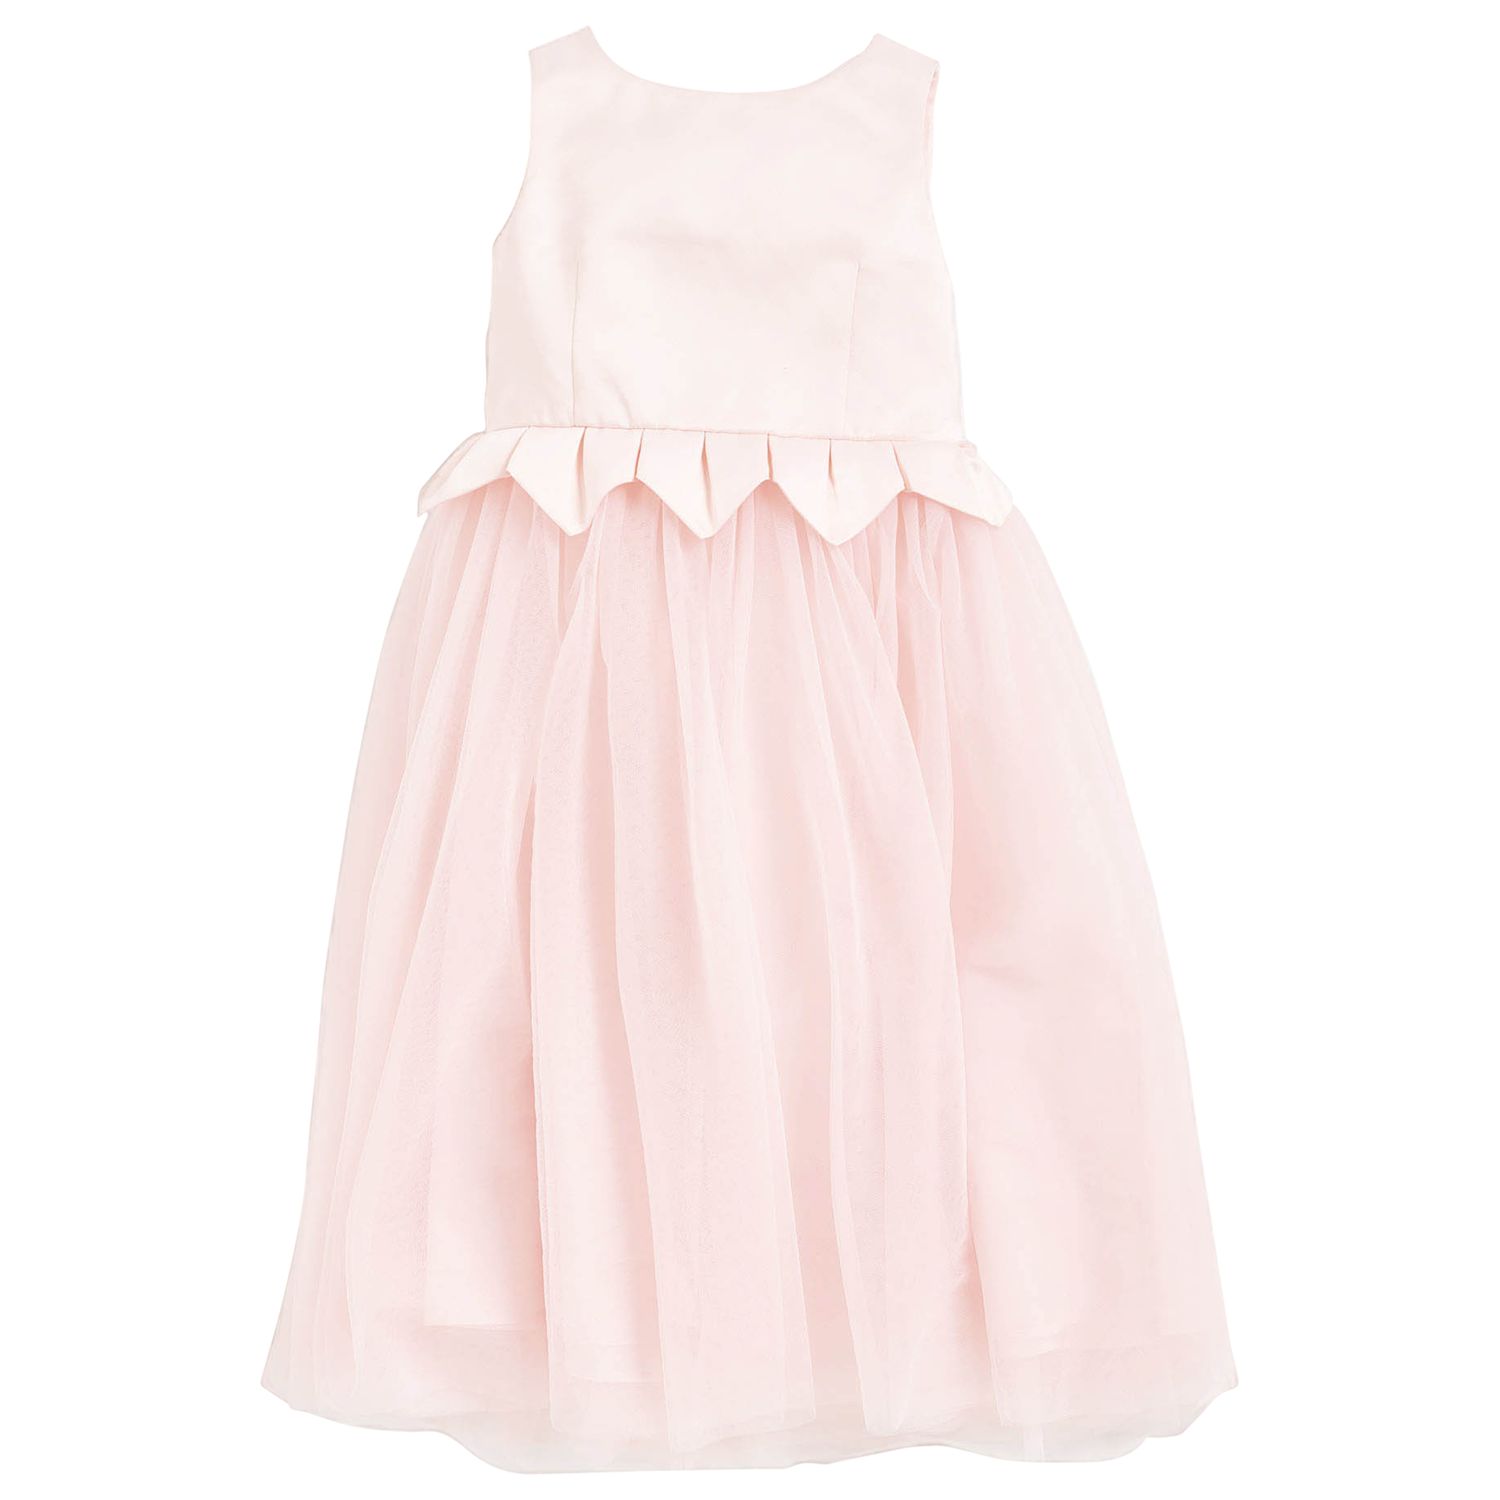 Angel & Rocket Girls' Tulle Skirt Dress, Pink at John Lewis & Partners